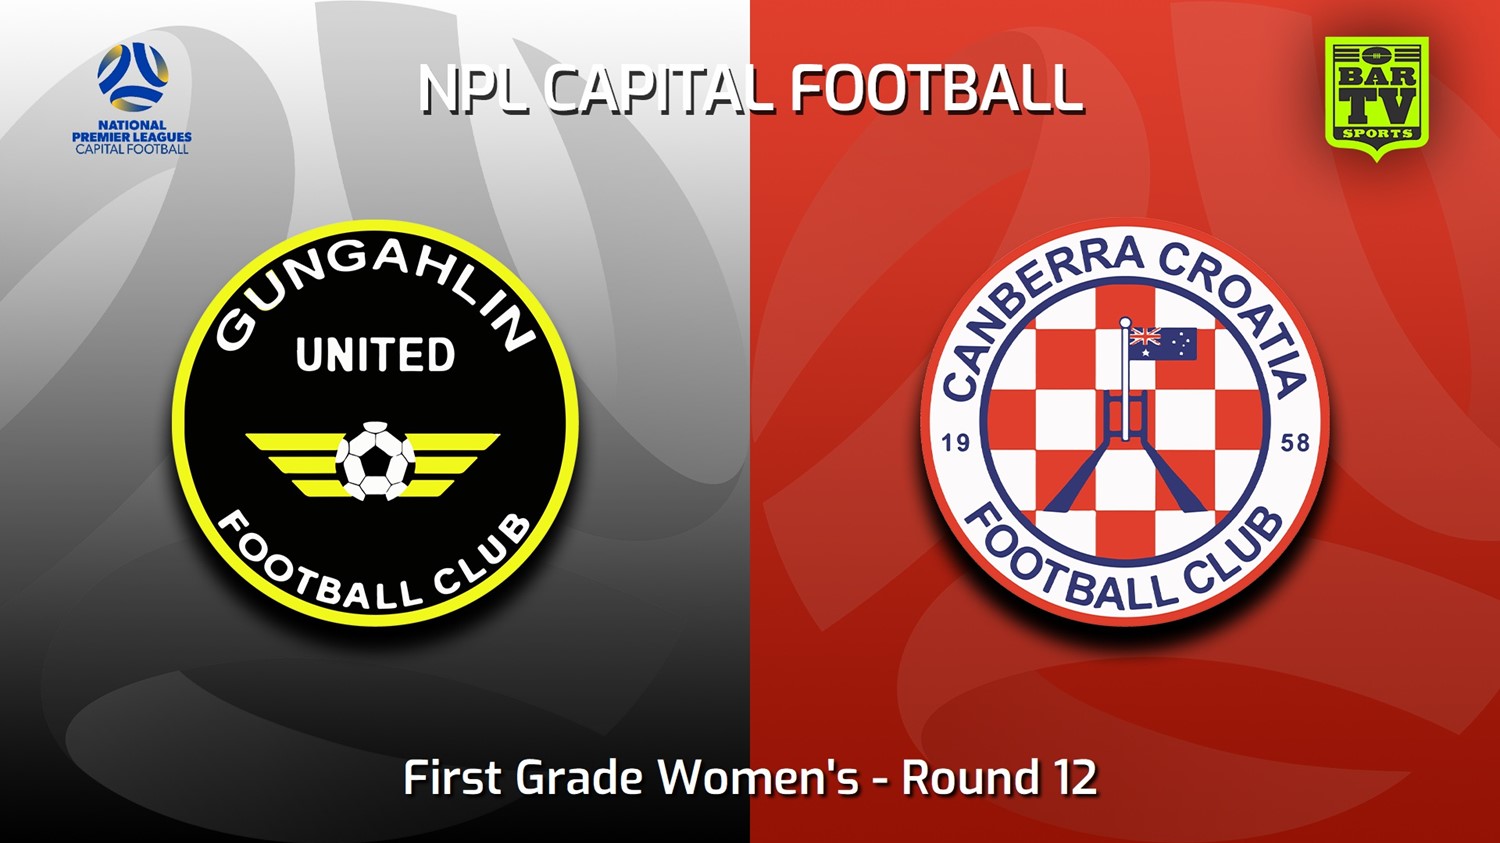 230625-Capital Womens Round 12 - Gungahlin United FC (women) v Canberra Croatia FC (women) Minigame Slate Image